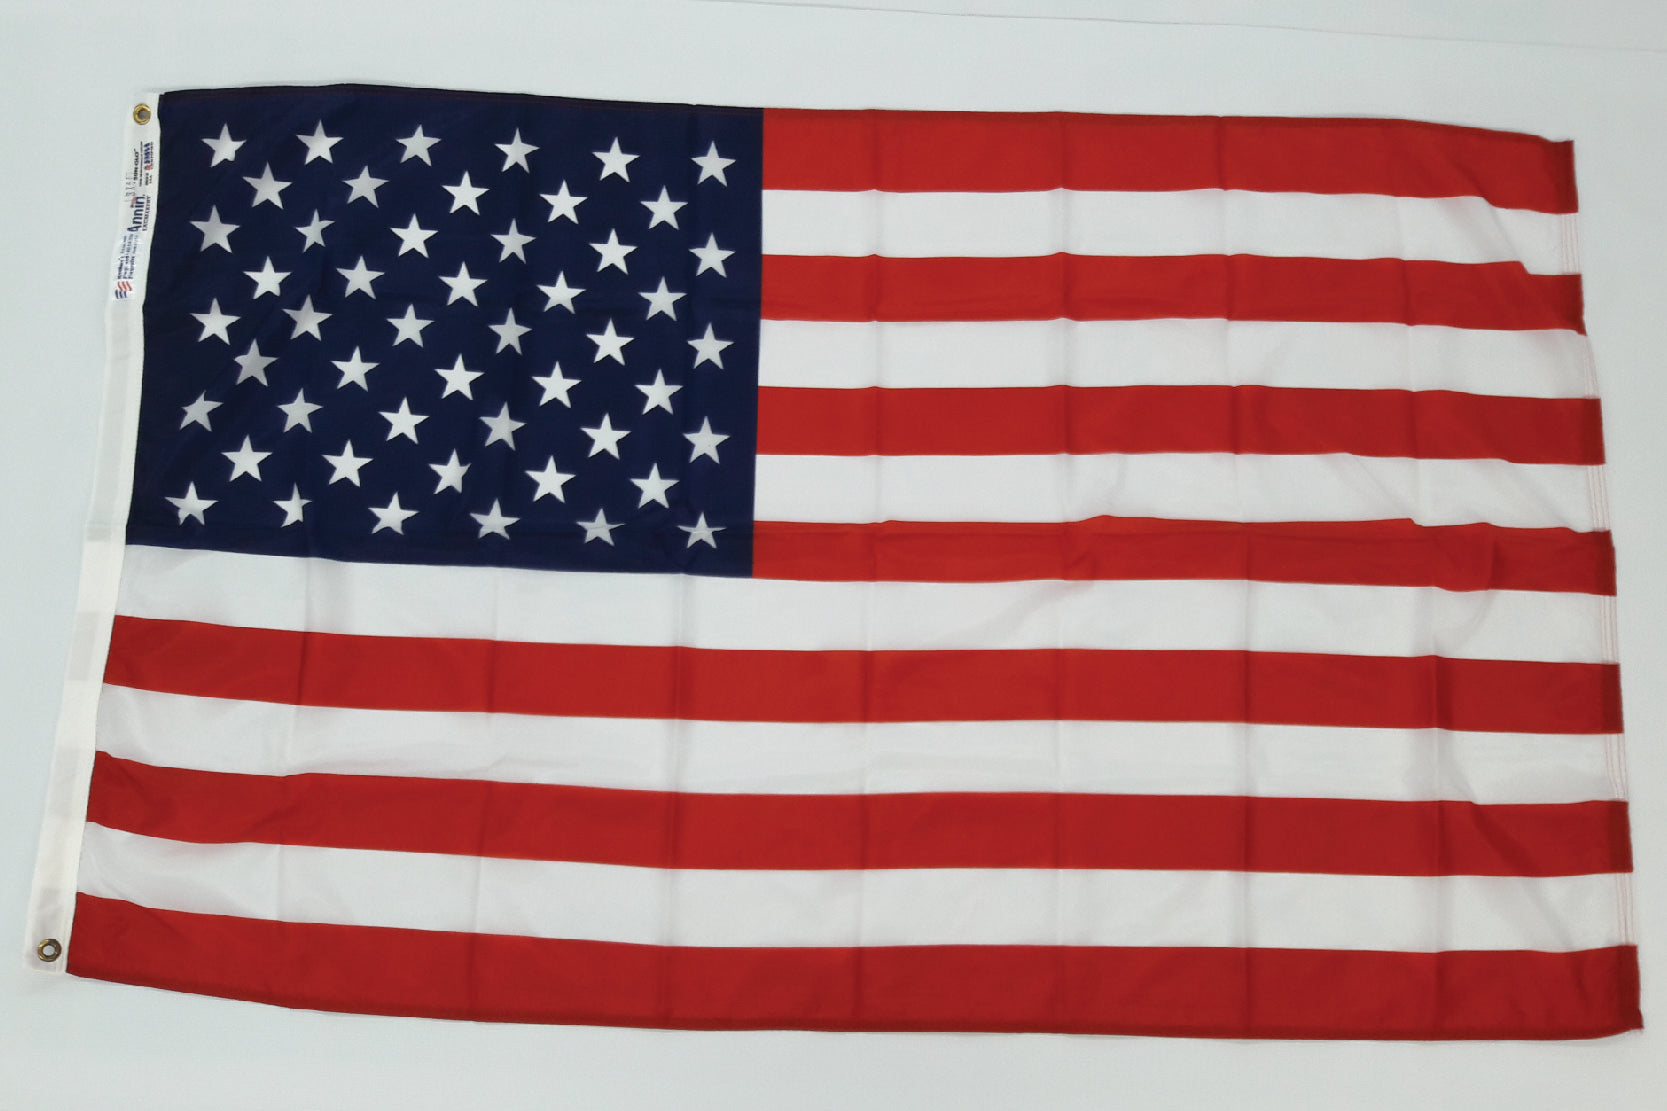 3' x 5' U.S. nylon flag - PRINTED